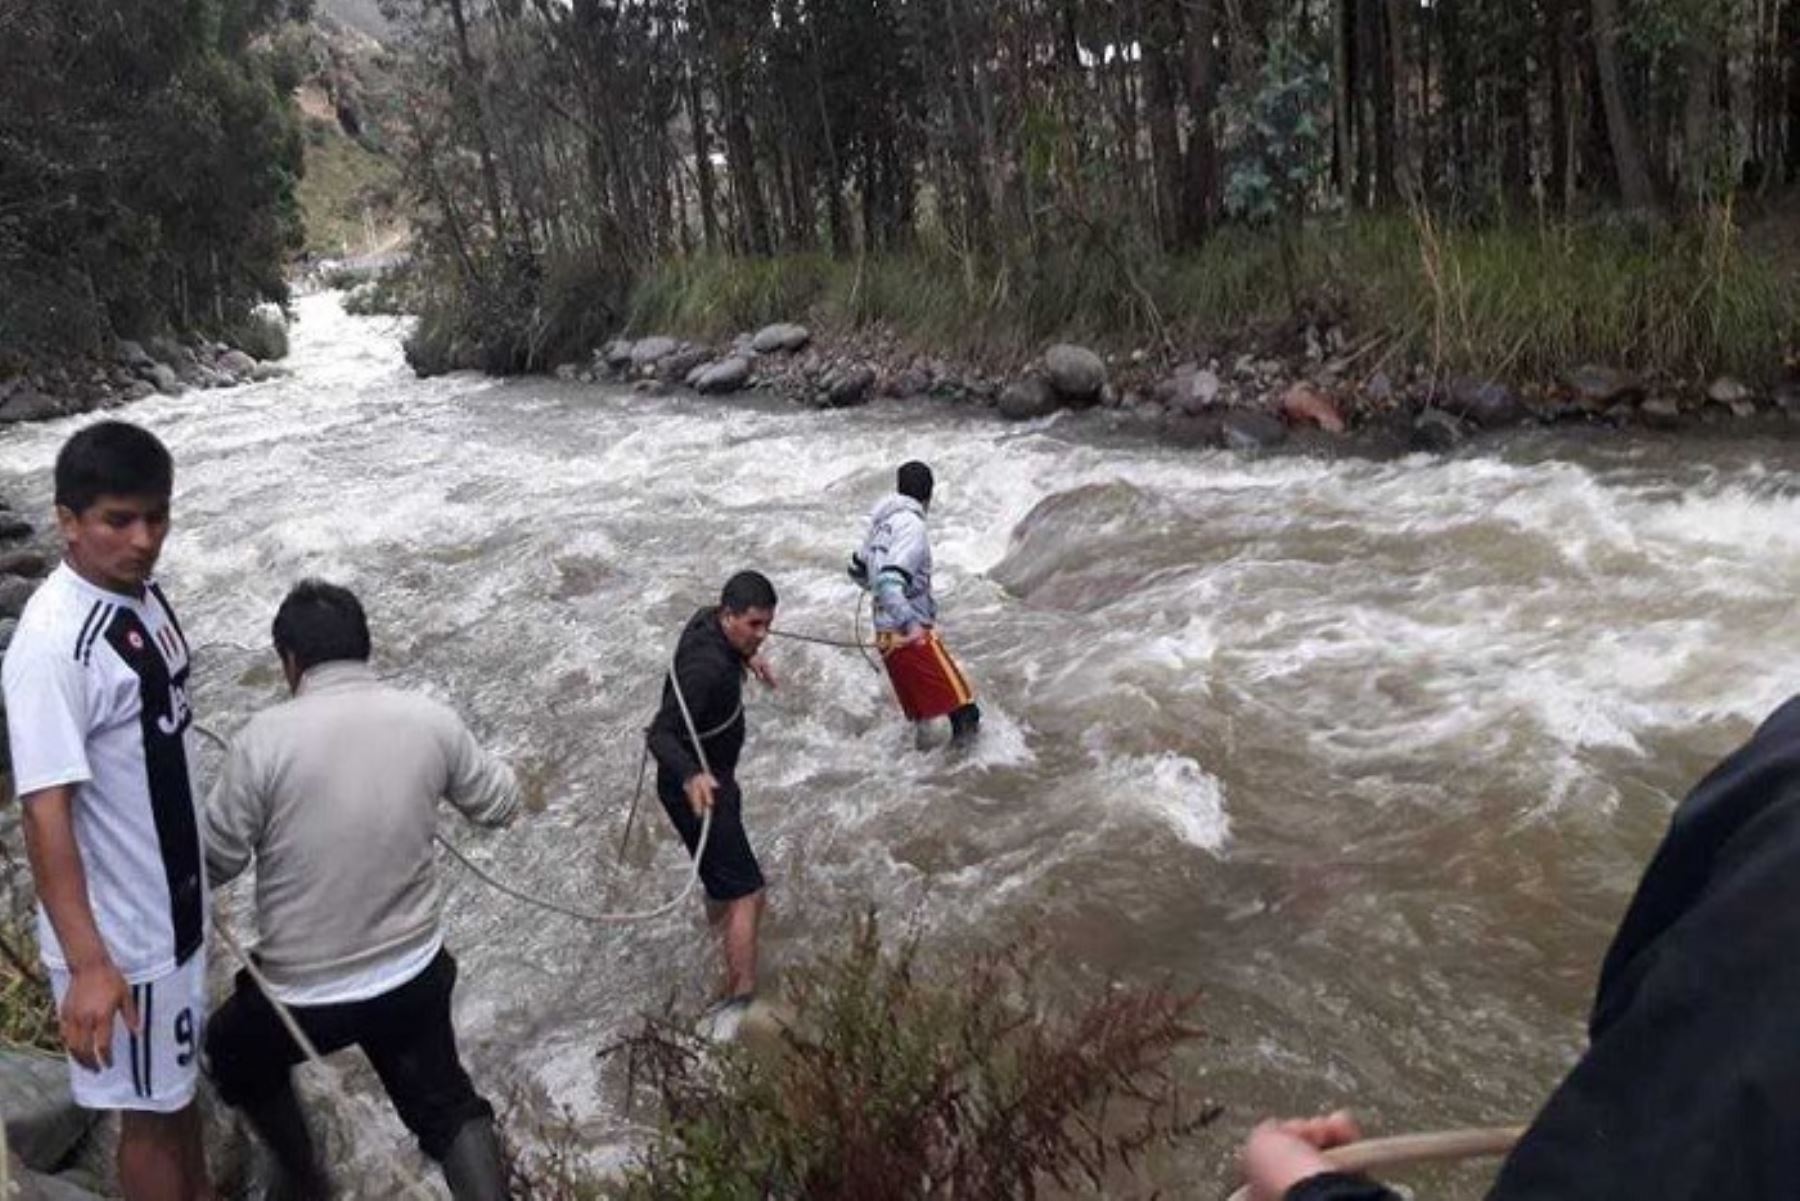 Una madre de familia, acompañada de sus hijos, intentó cruzar un puente artesanal en el distrito de Huachón, en la provincia y región Pasco, pero lamentablemente resbalaron y su hija perdieron la vida al caer al río.